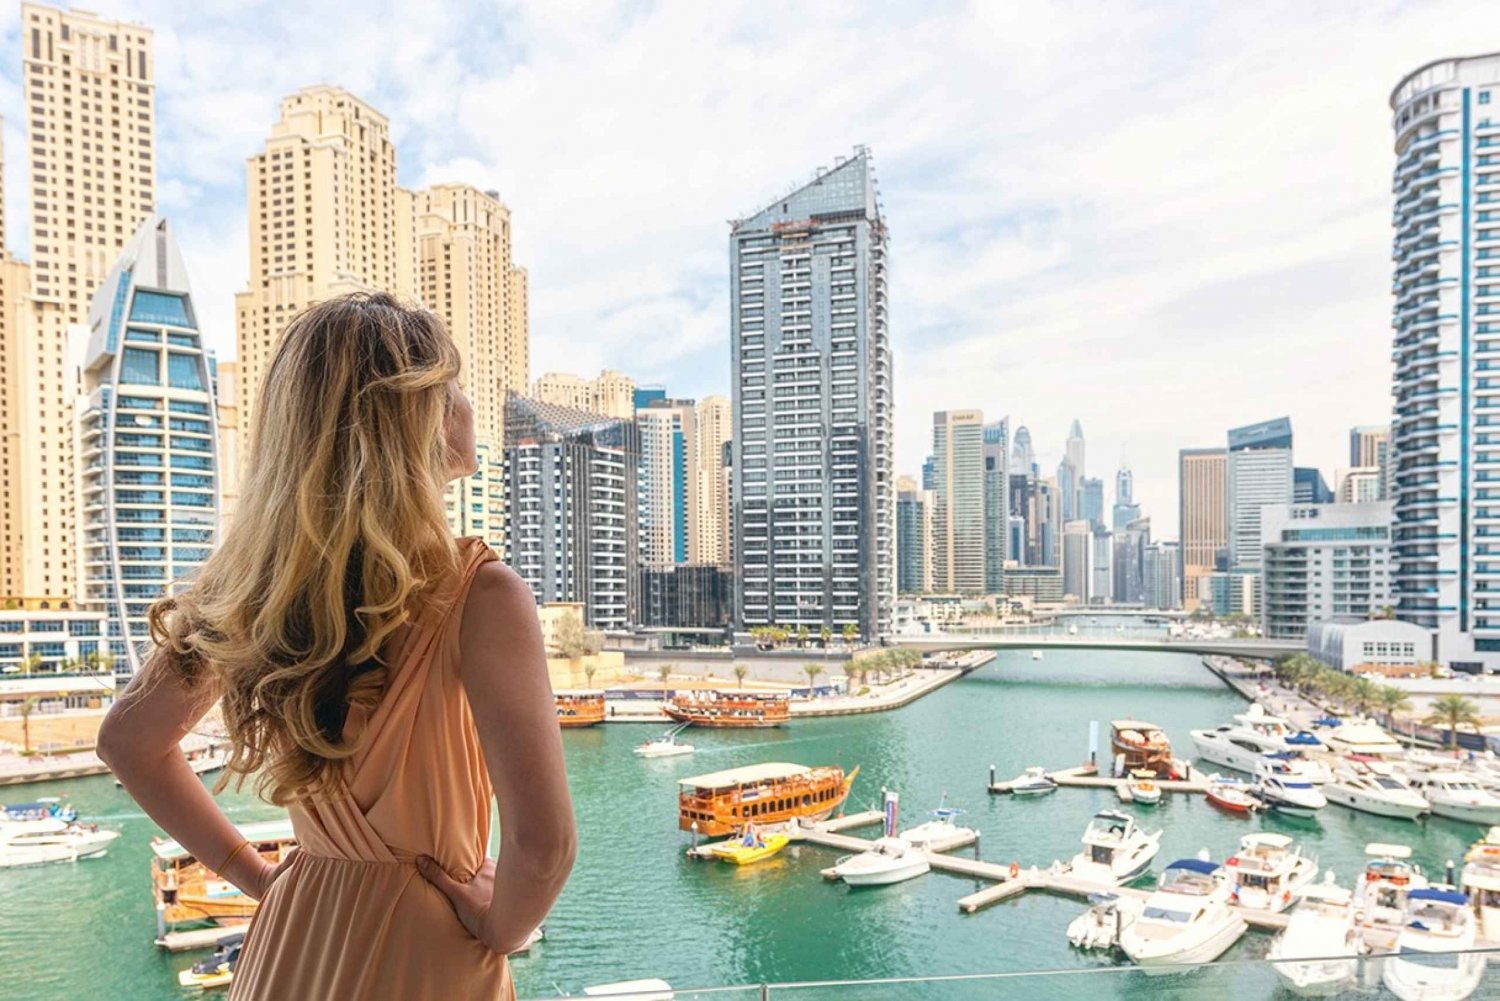 Dubai: giro turistico privato di mezza giornata